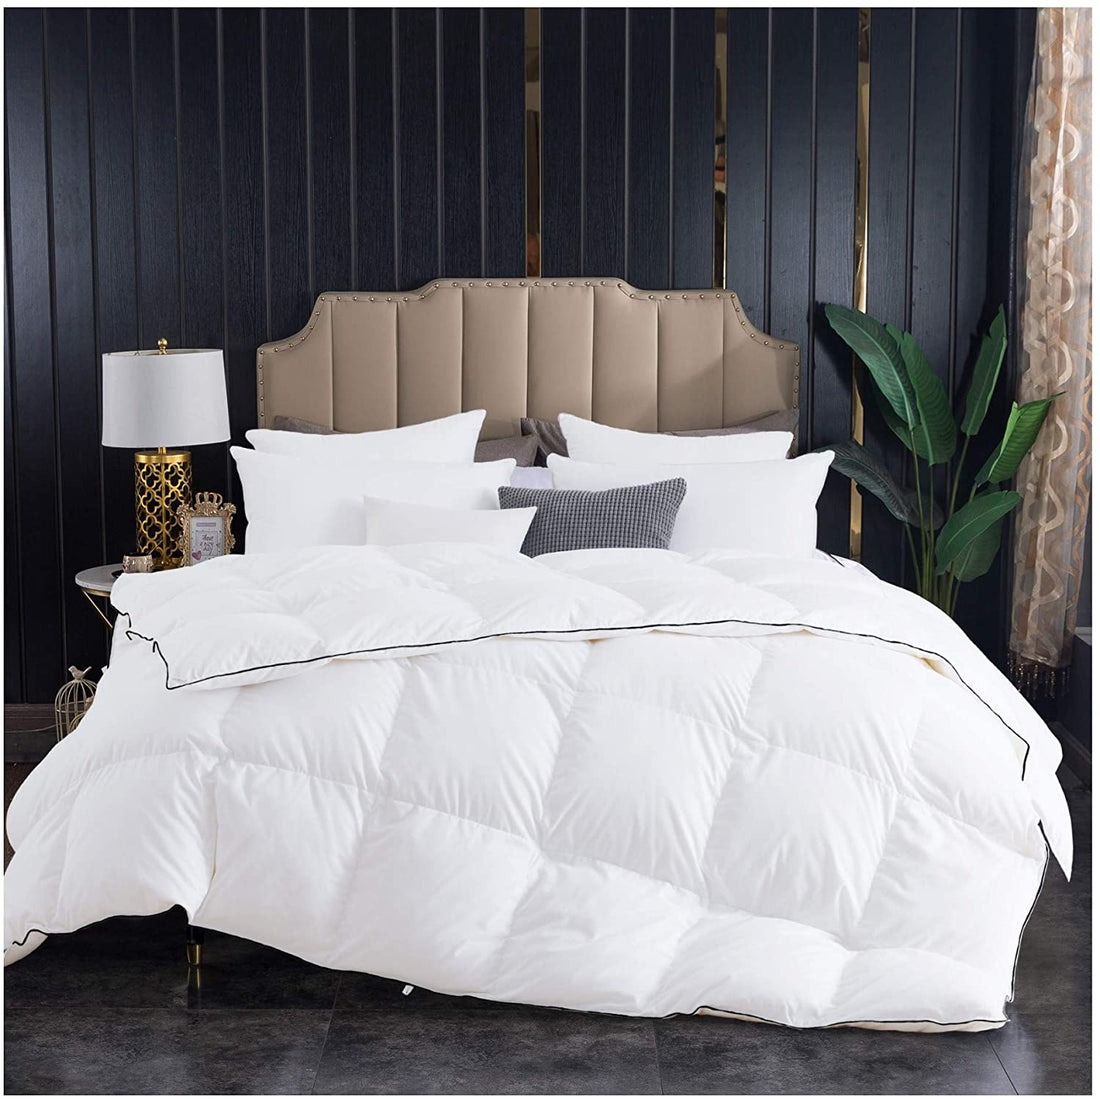 Bed Comforters vs Duvets